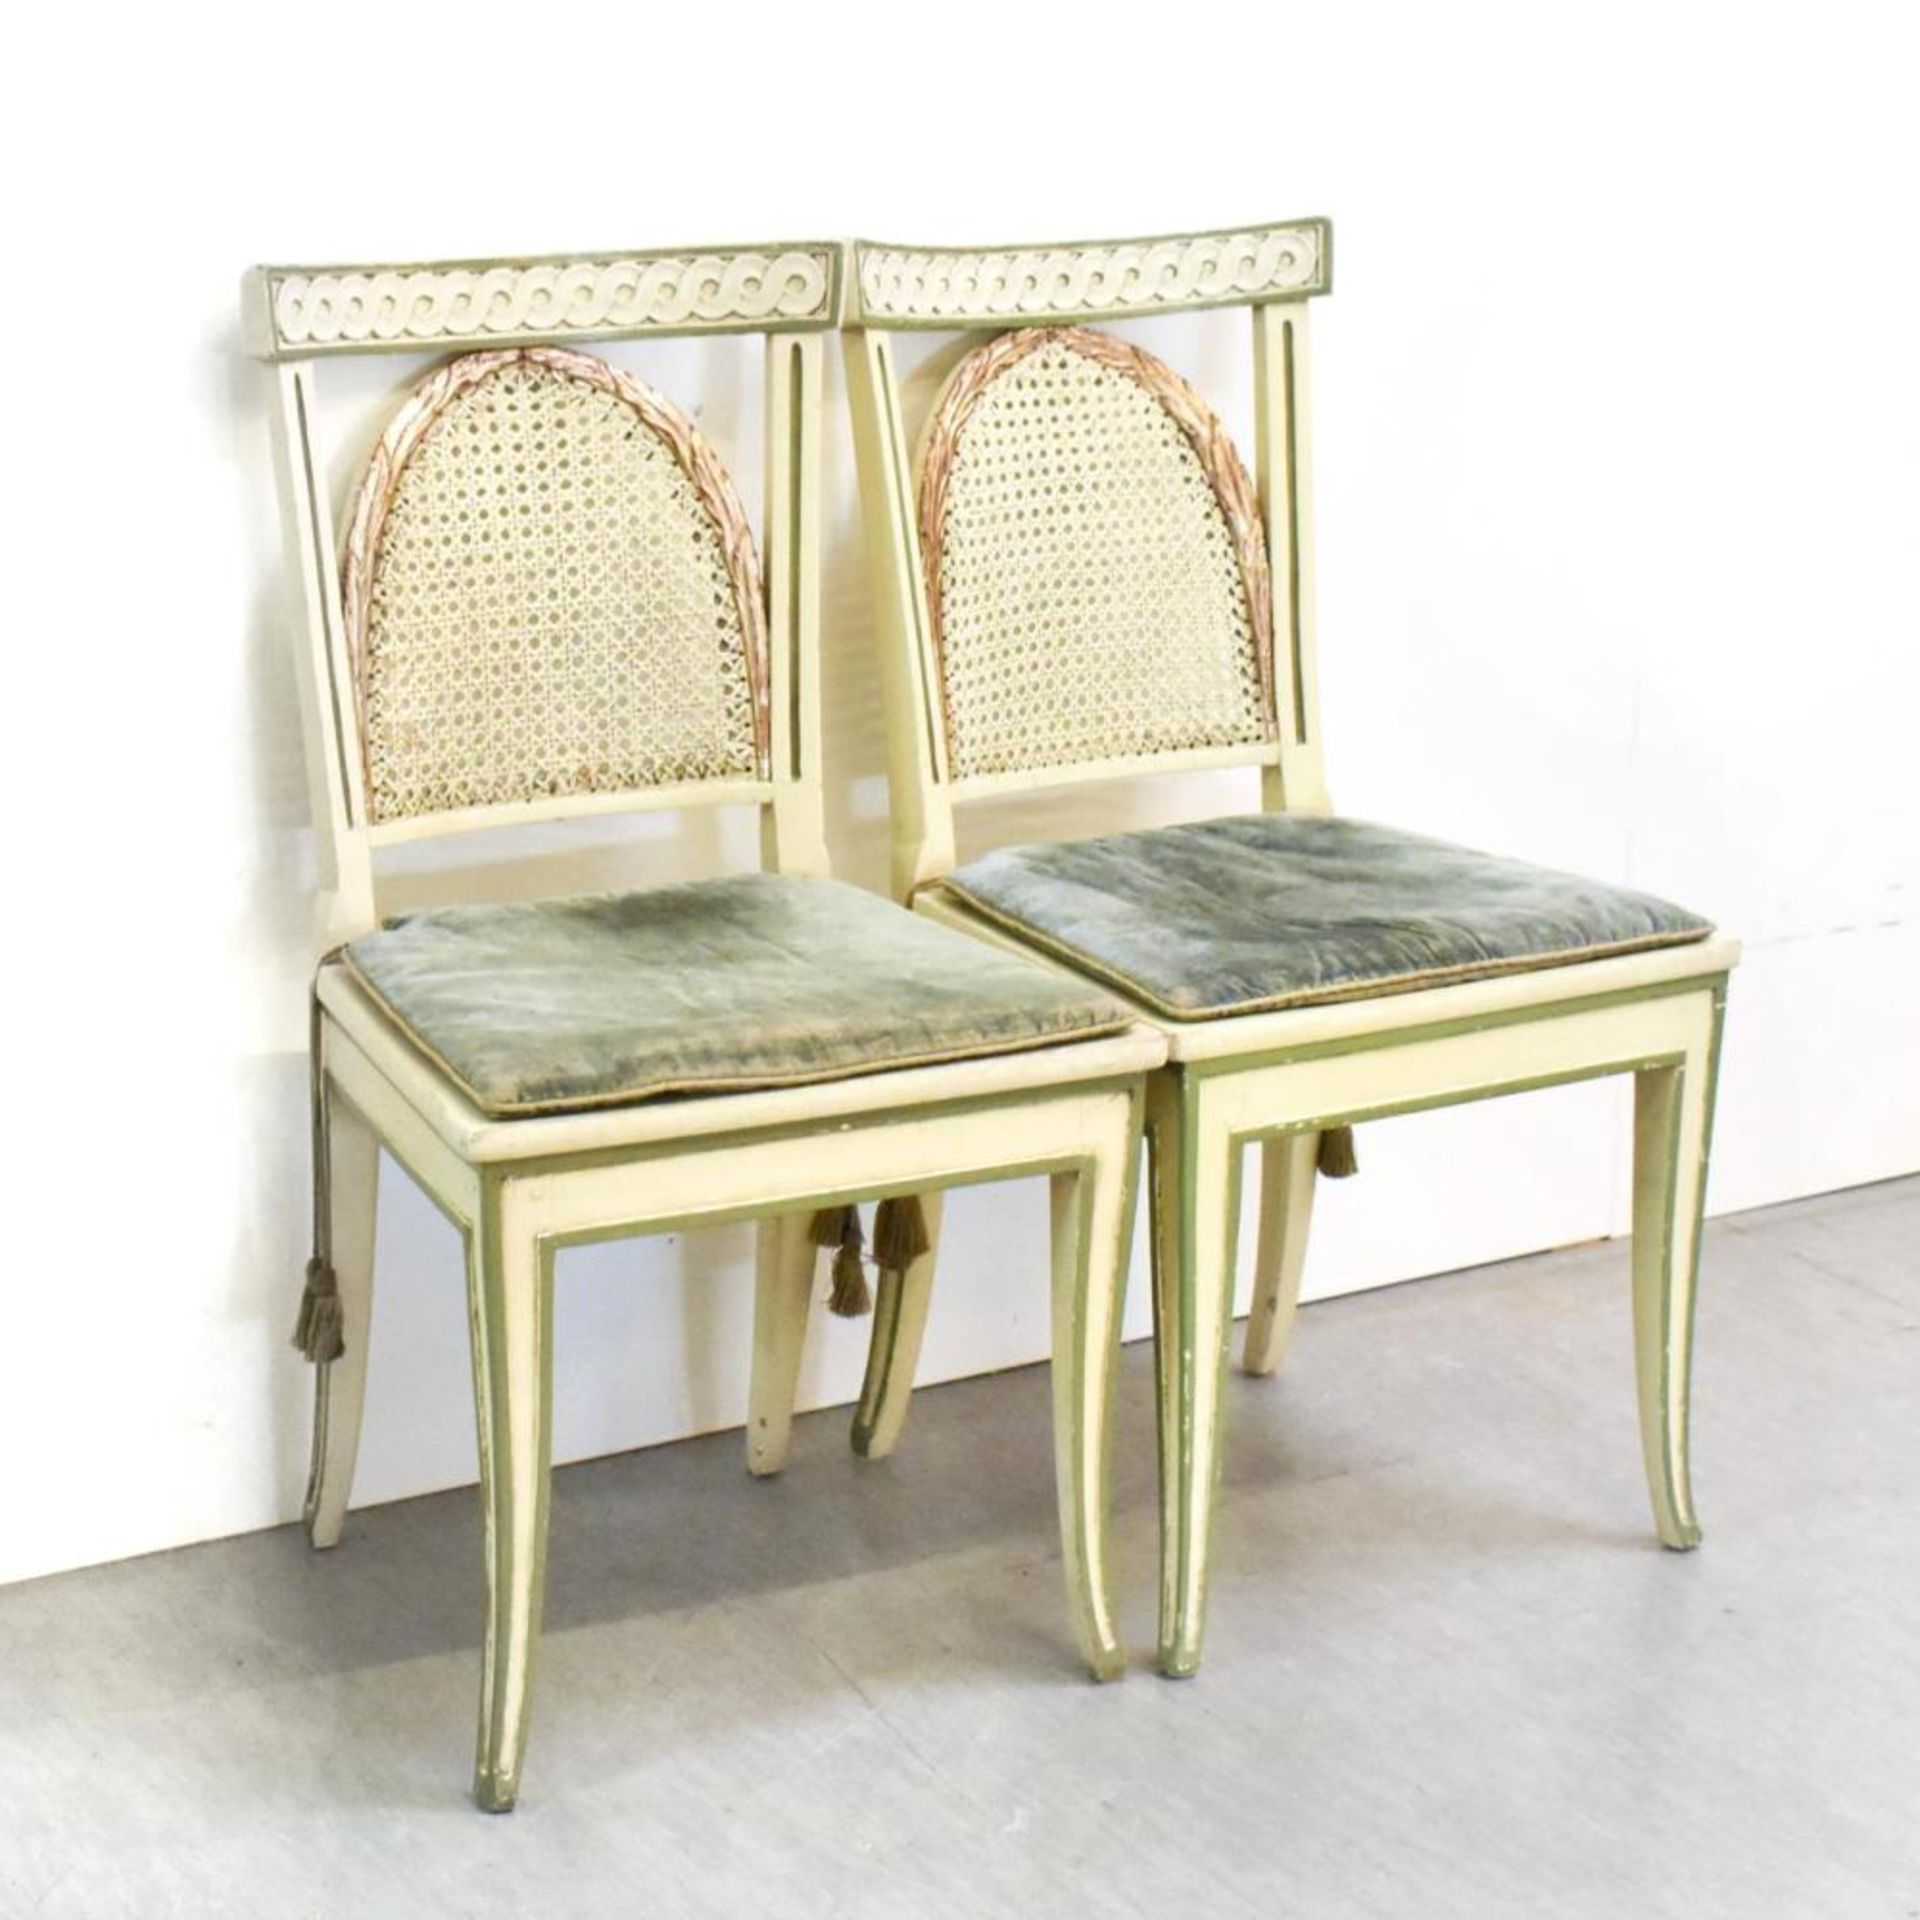 Tisch mit acht Stühlen. Holz, Farbfassung, Rohrgeflecht. - Bild 4 aus 4